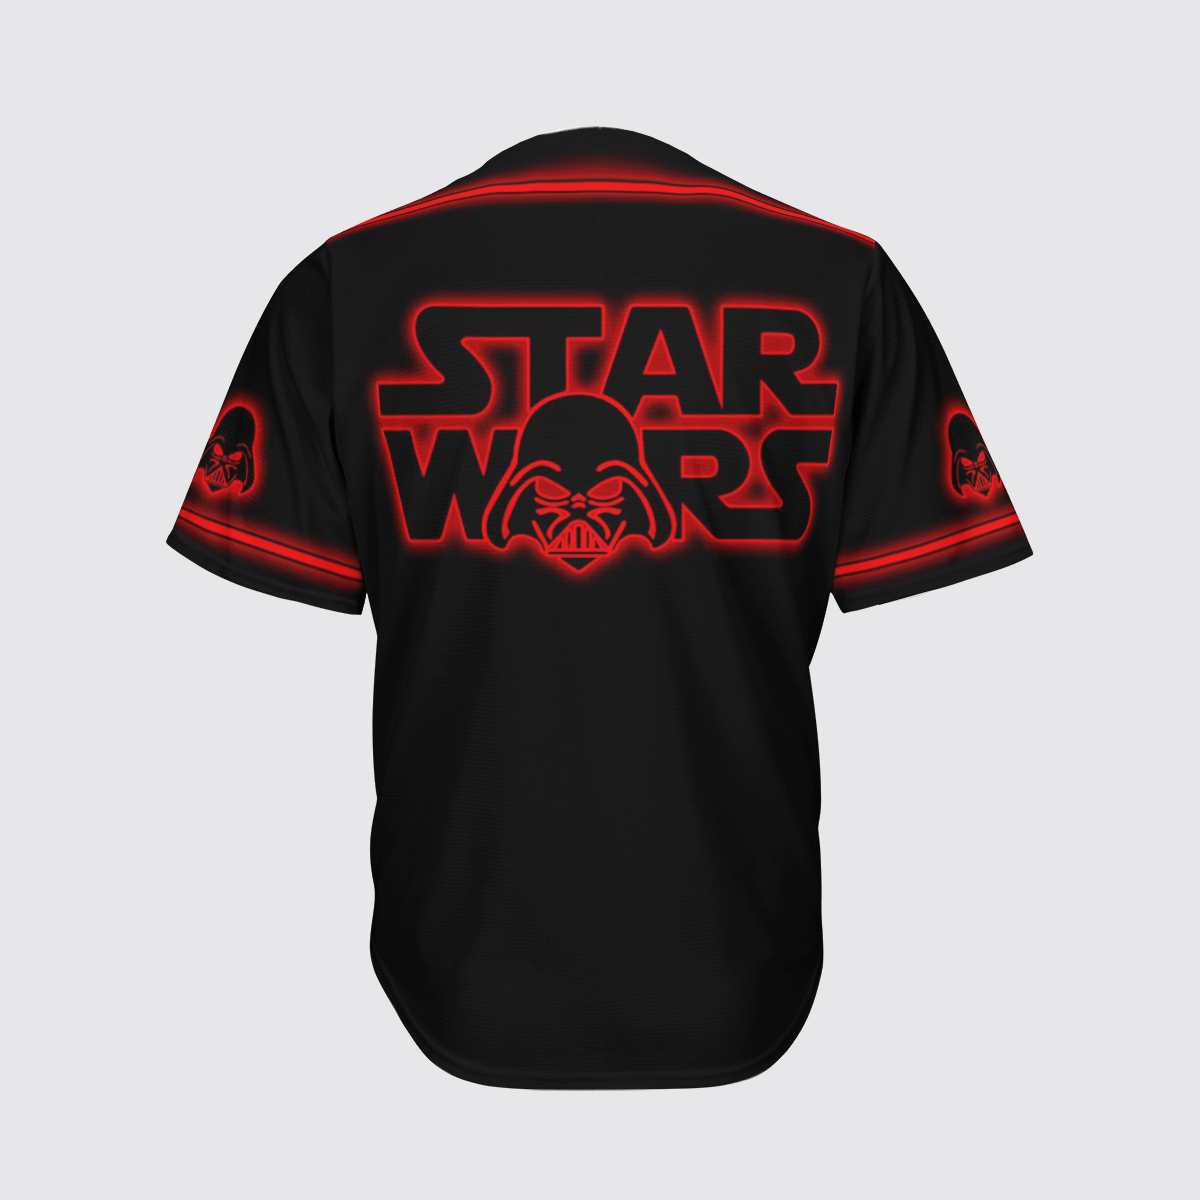 Darth Vader Star Wars baseball shirt 1